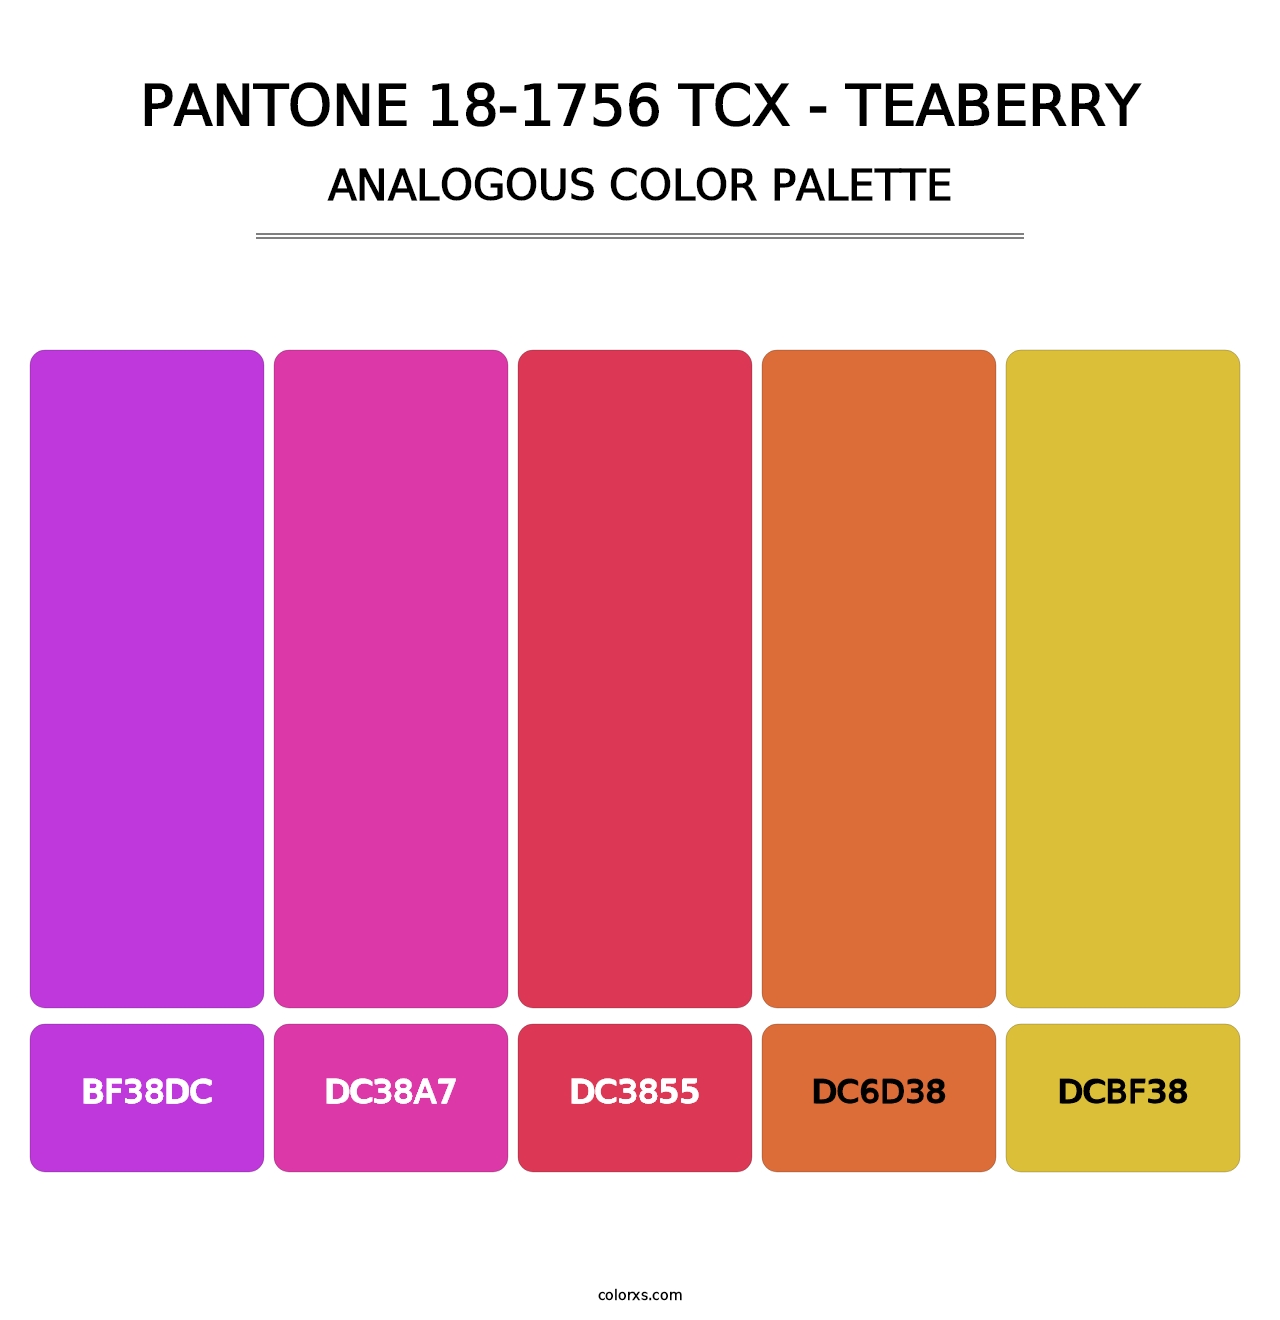 PANTONE 18-1756 TCX - Teaberry - Analogous Color Palette